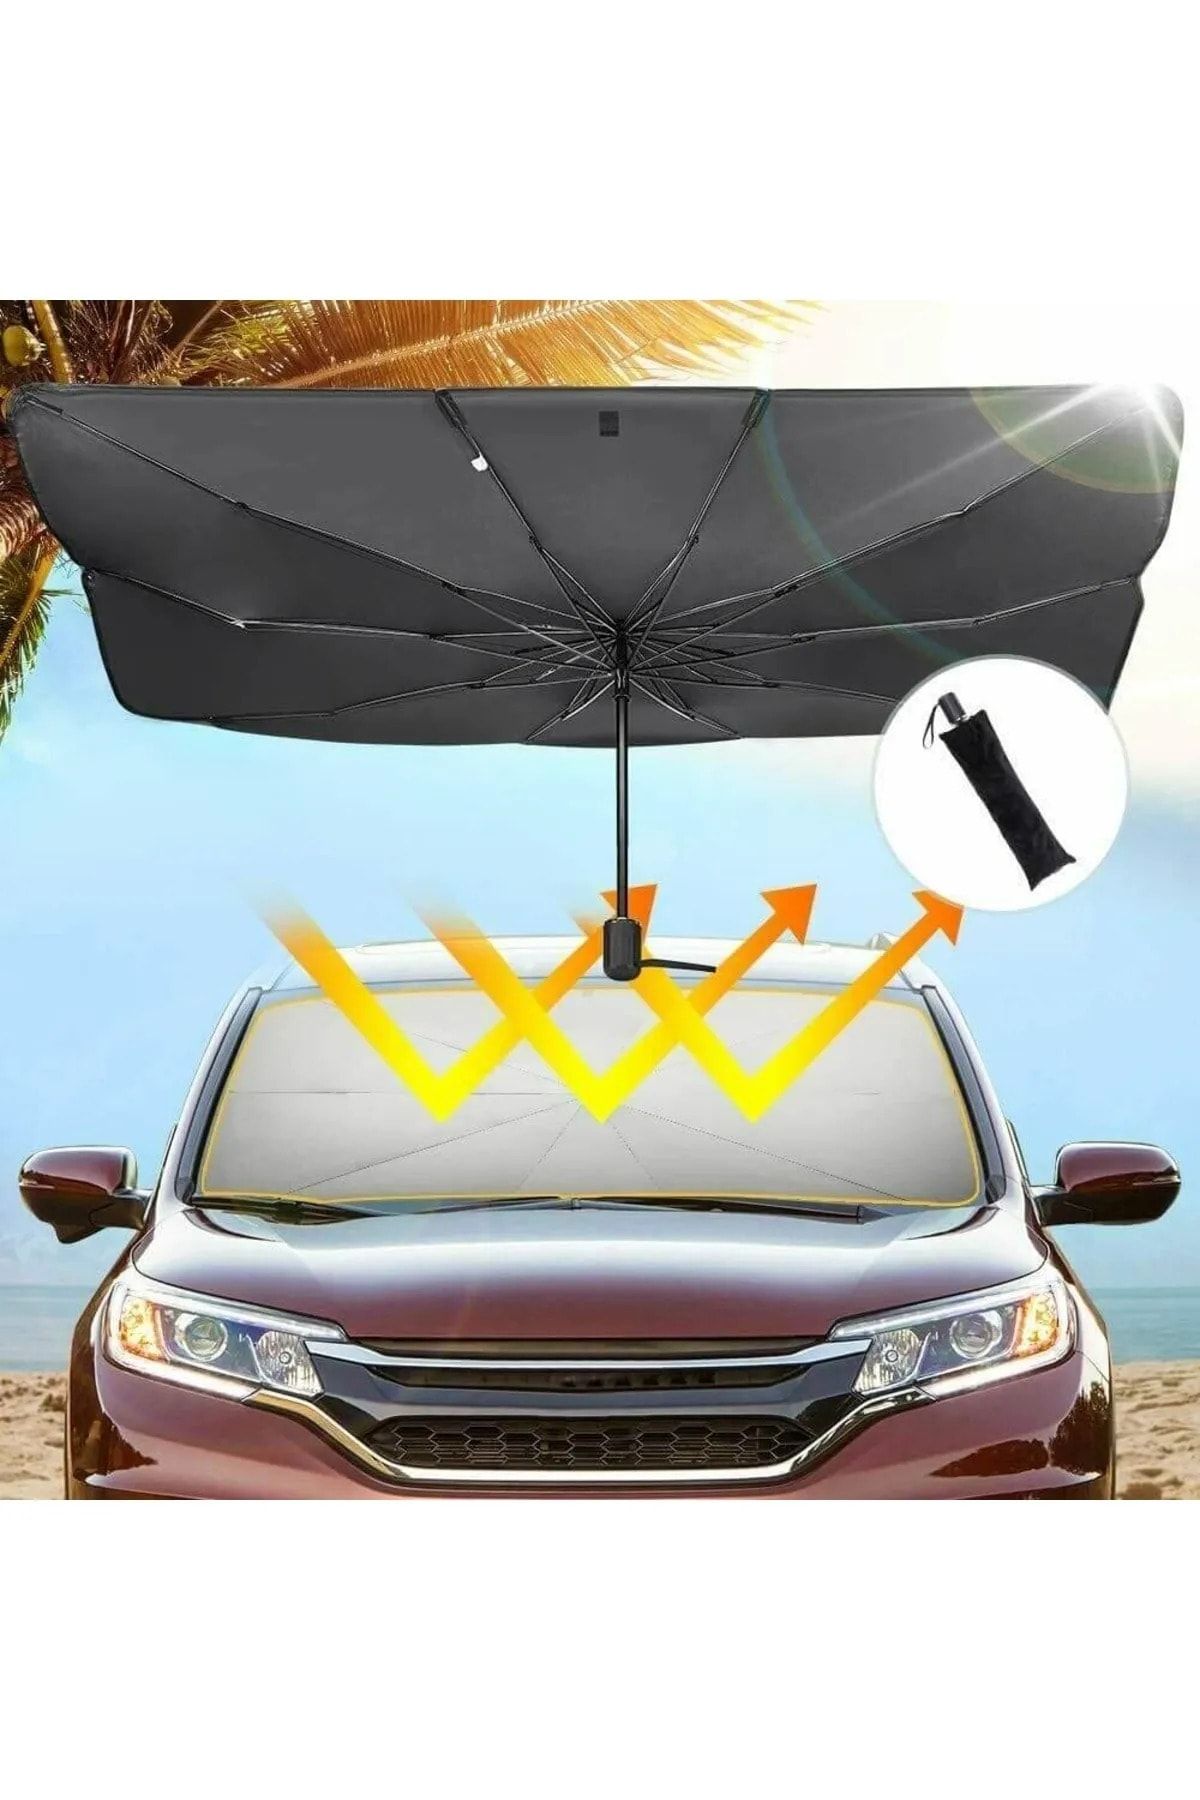 Universal Dacia Solenza Araba Ön Cam Güneşlik Katlanabilir Güneşlik Şemsiye Ön Cam Gölgelik